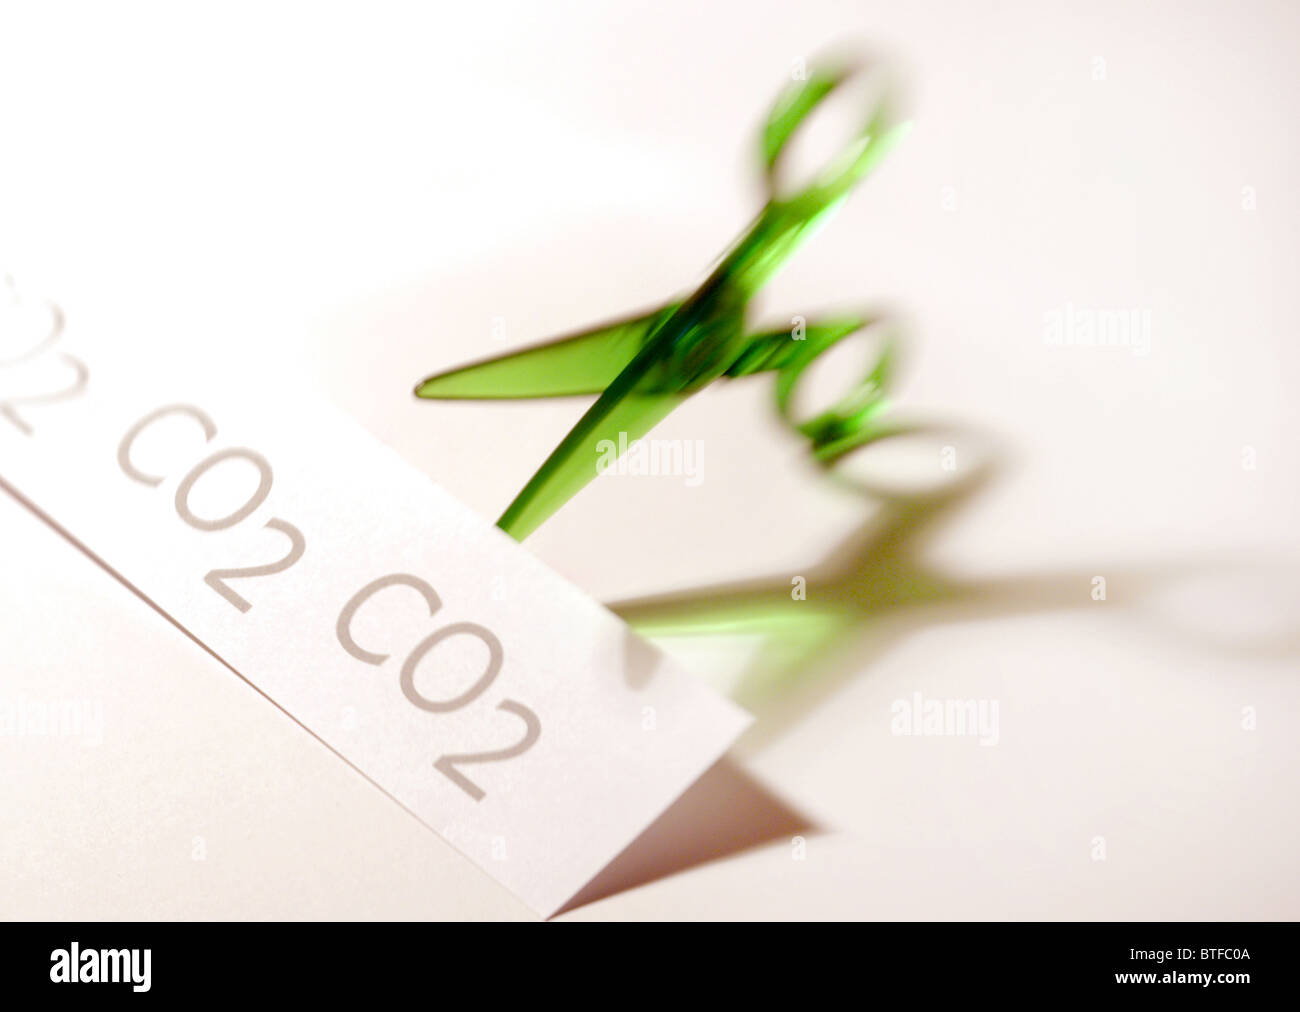 Di carbonio (CO2) di riduzione / concetto tagli con il verde di taglio a forbice di CO2 grafica. Foto Stock